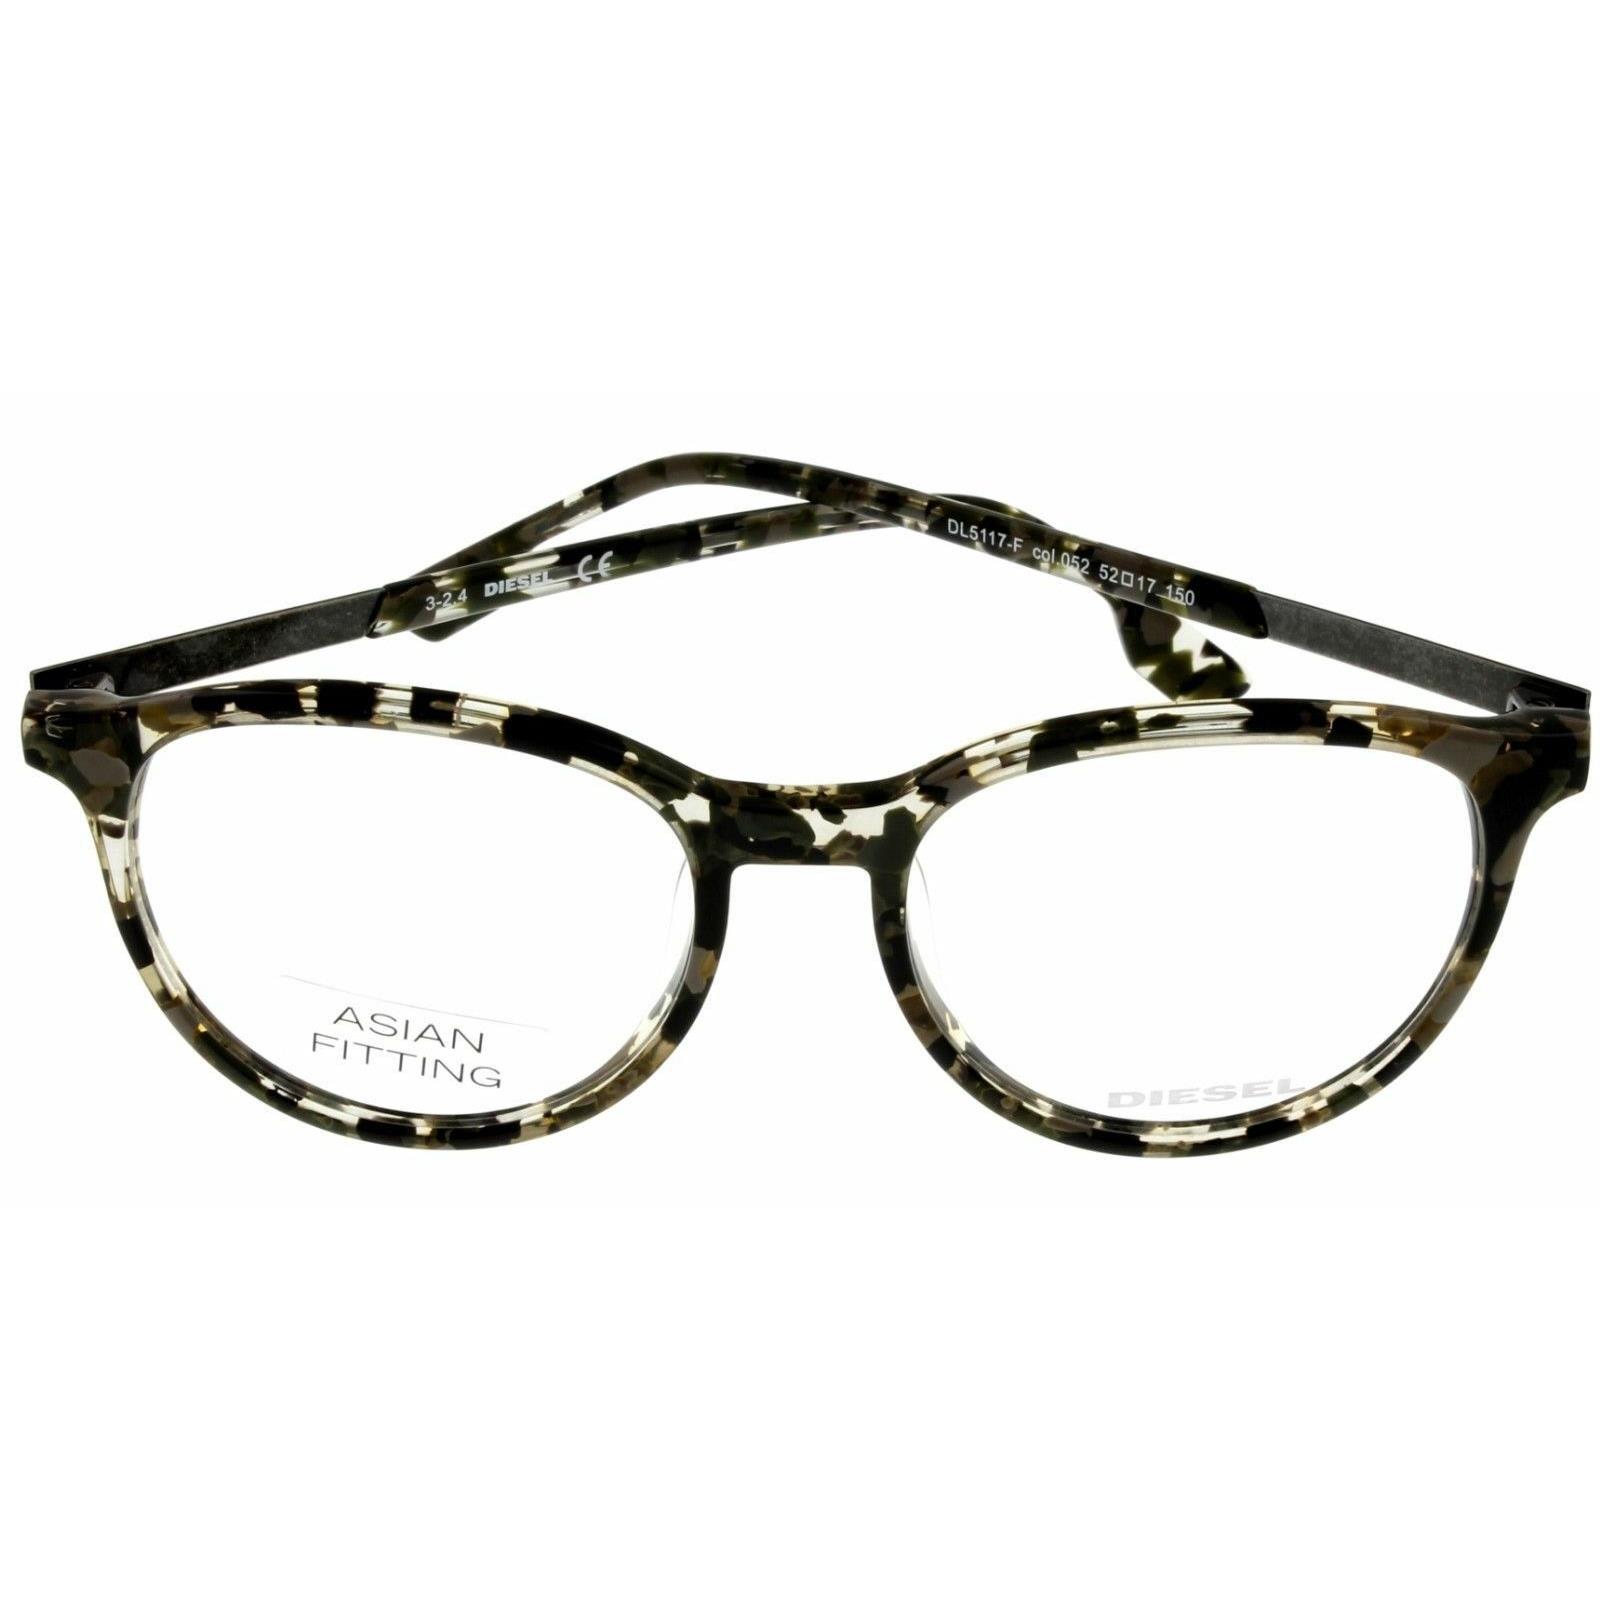 Diesel Unisex Dark Havana Eyeglasses Frame Oval DL5117 052